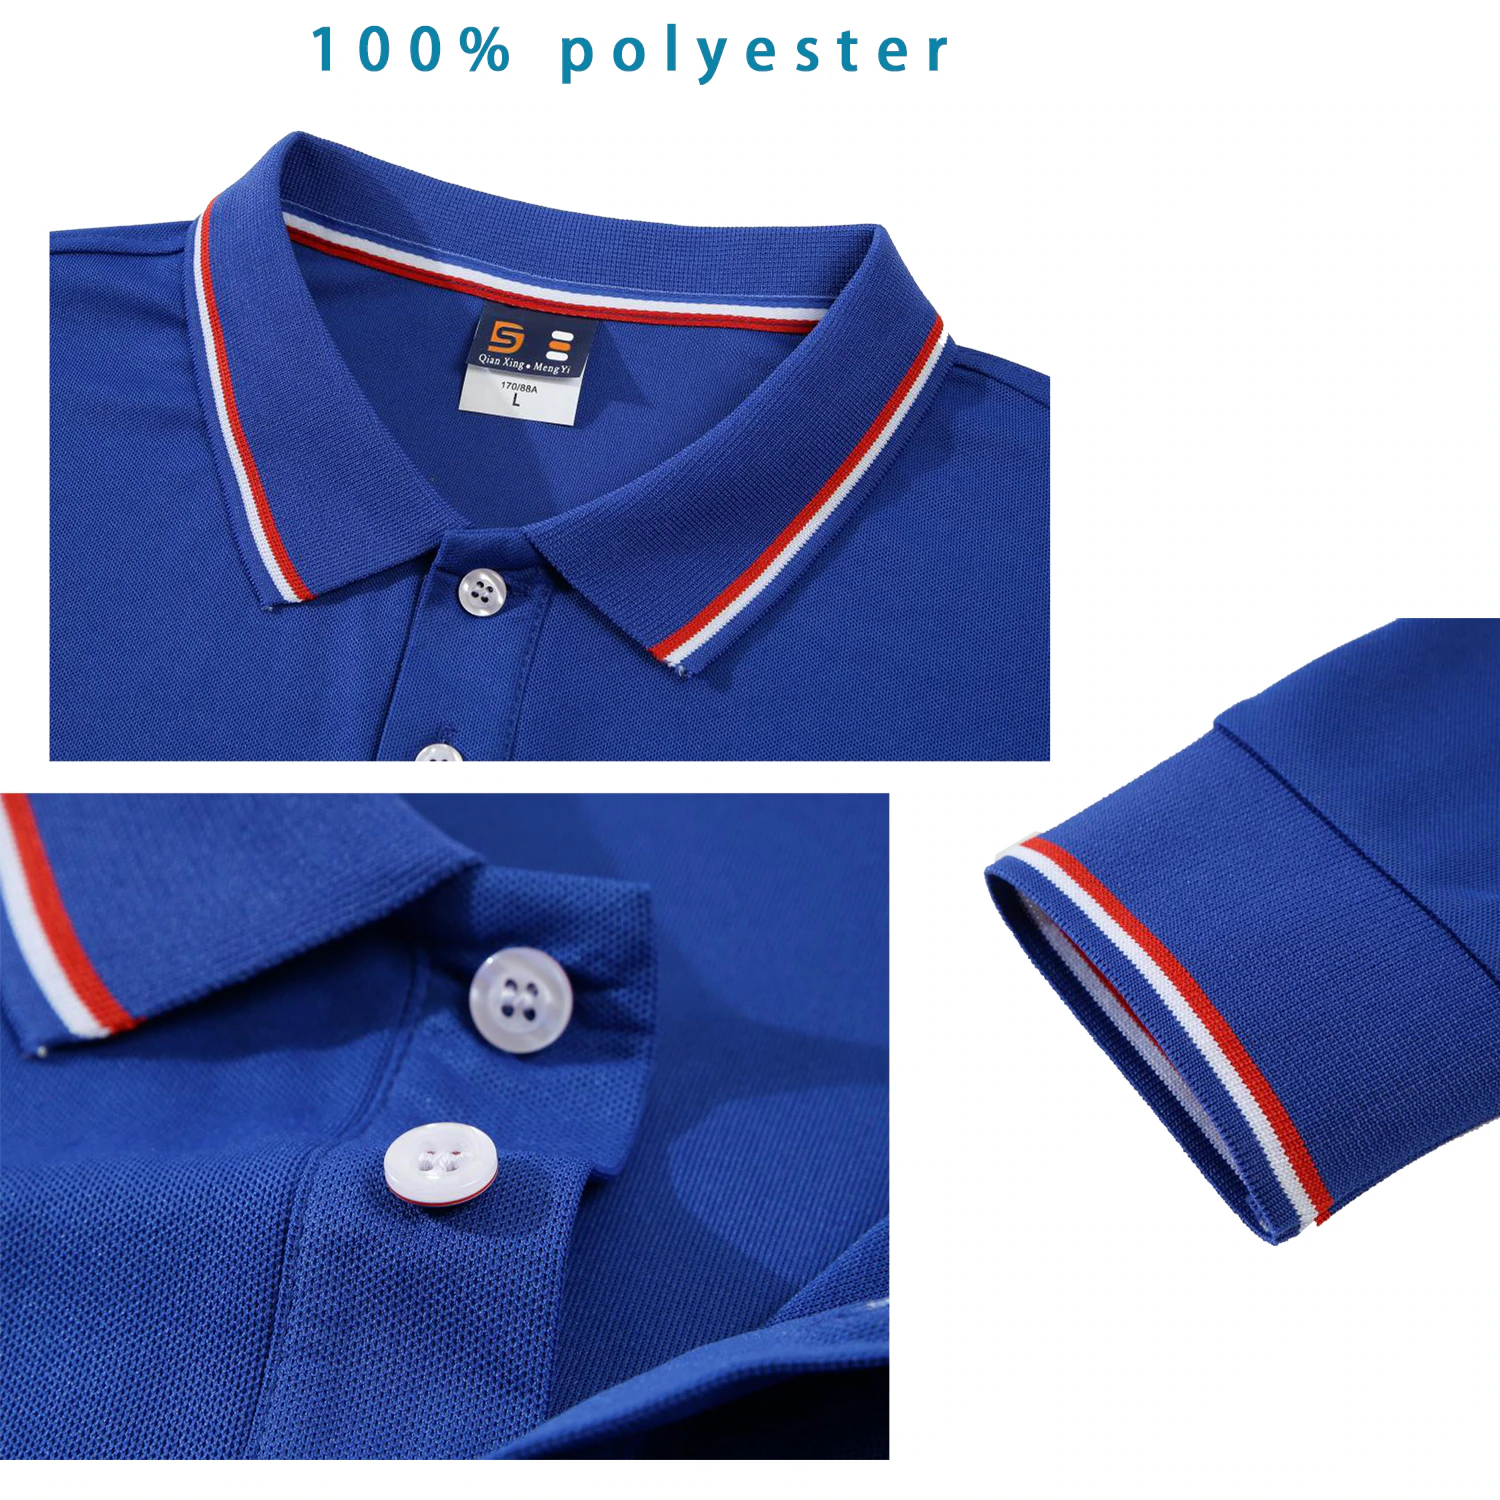 Pique Polo Shirt Manufacturer In Bangladesh